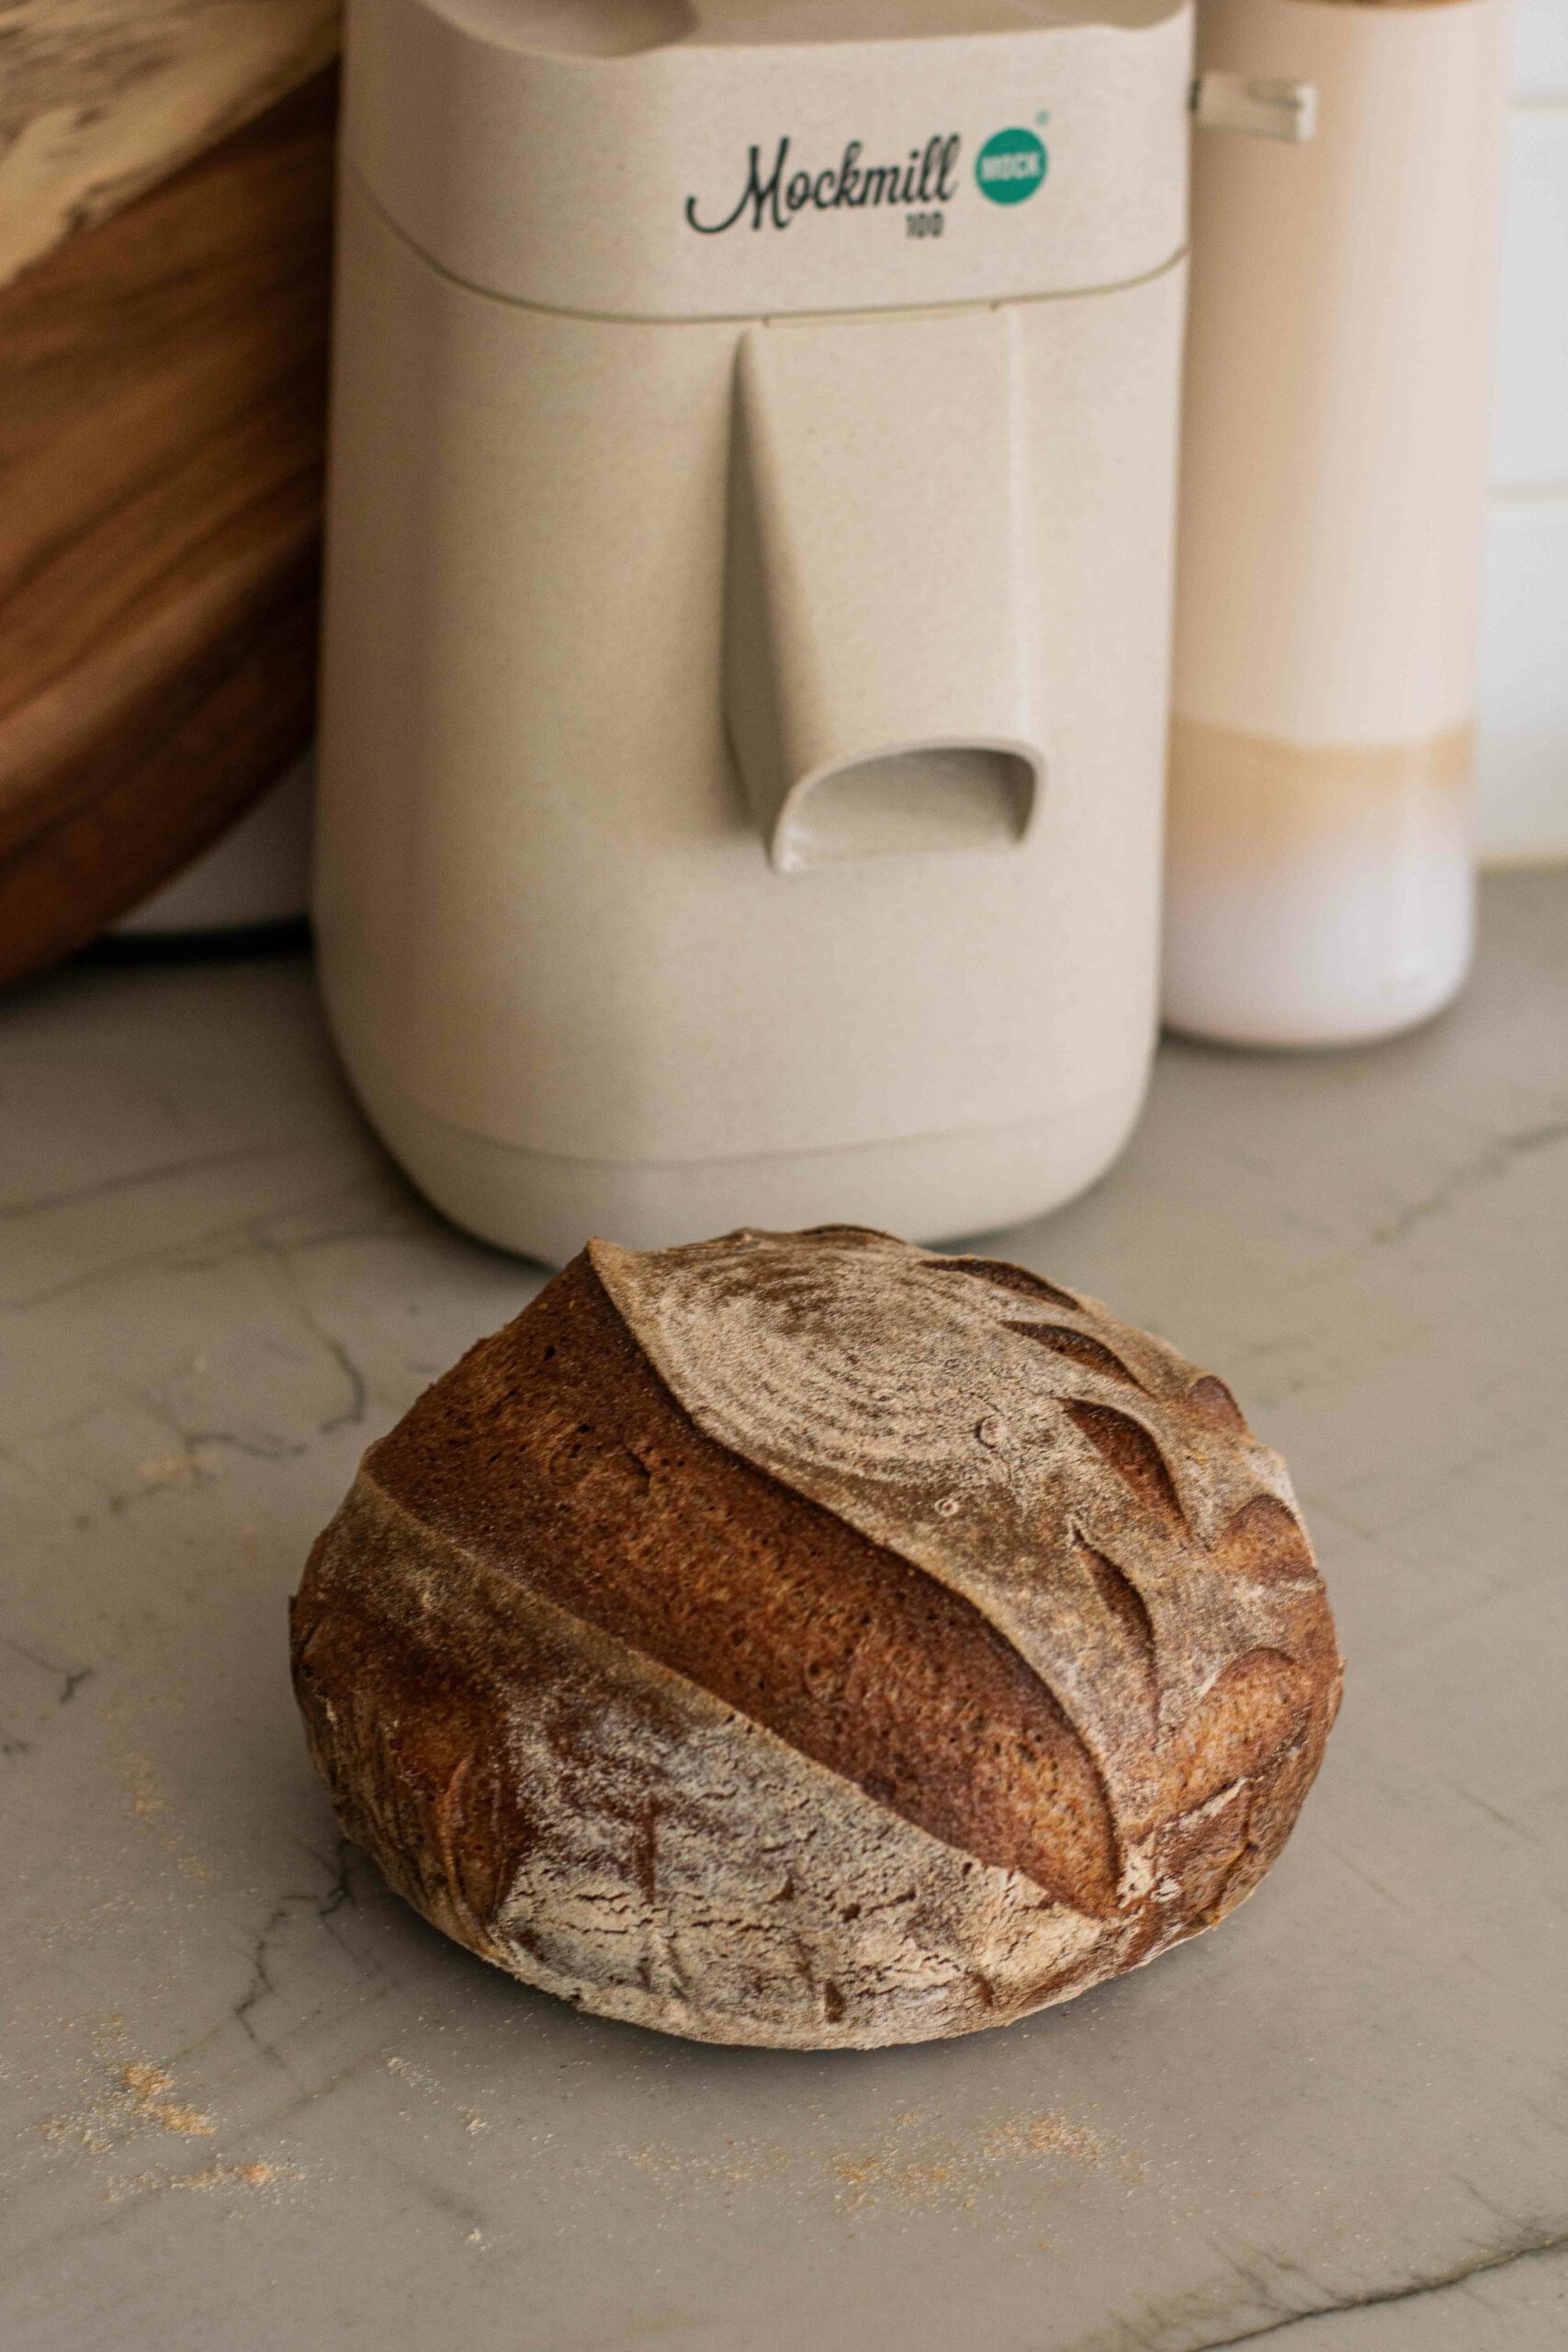 Glutenfreies Brot mit Sauerteig und selbstgemahlenem Mehl